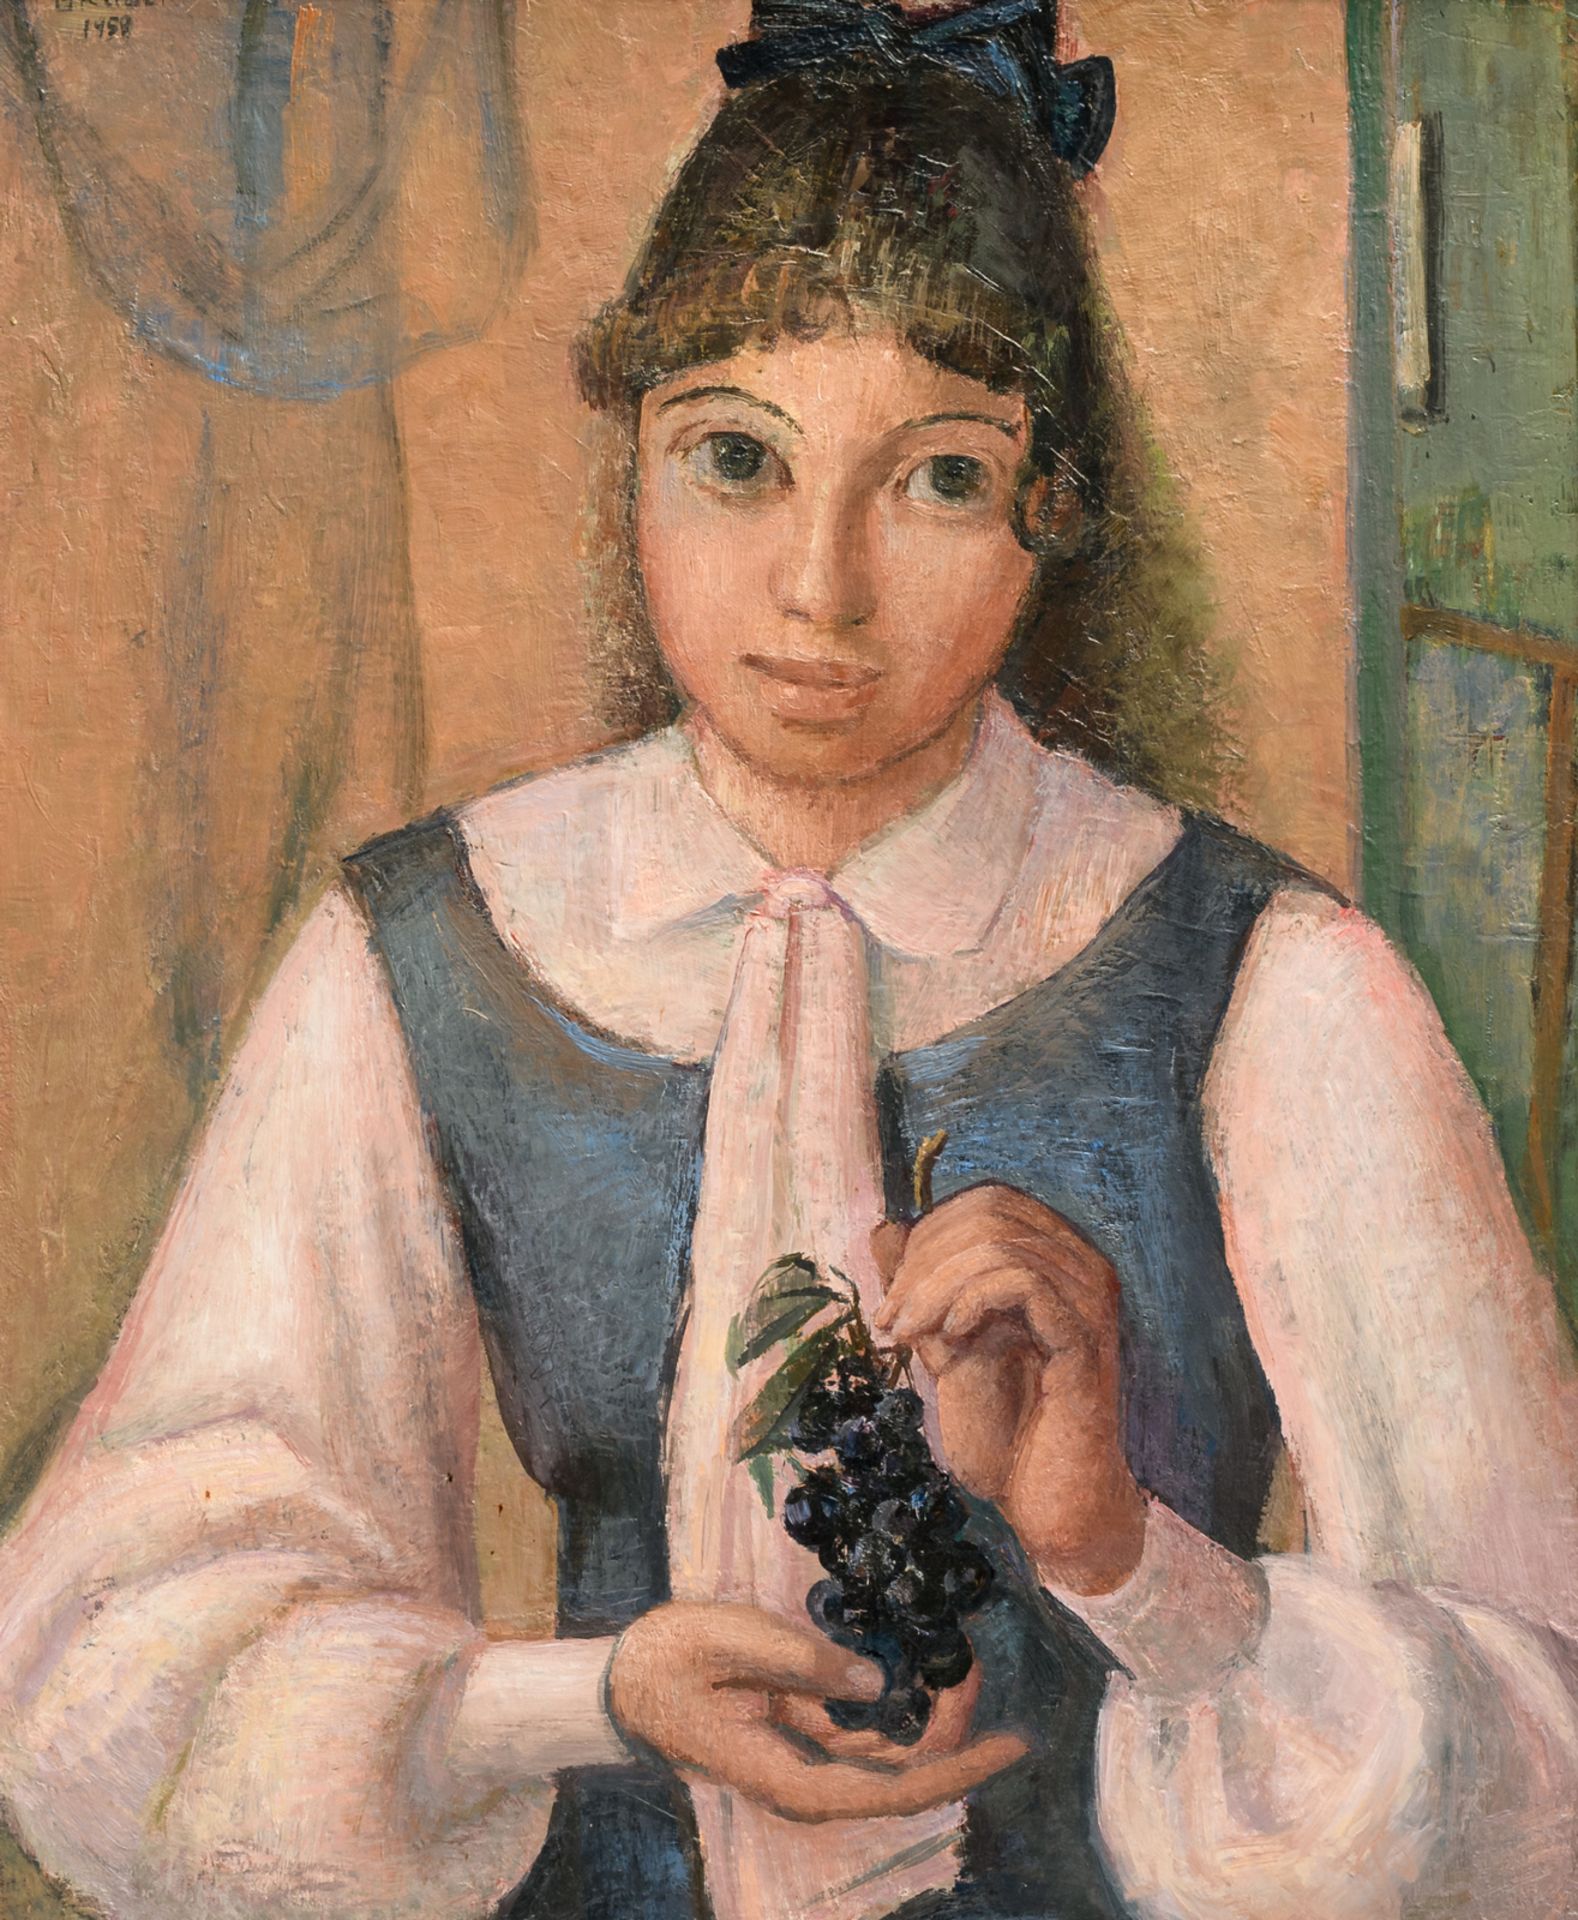 Gruber I., 'Ein Mädchen mit der Traube', oil on canvas, dated 1959, 61 x 74 cm